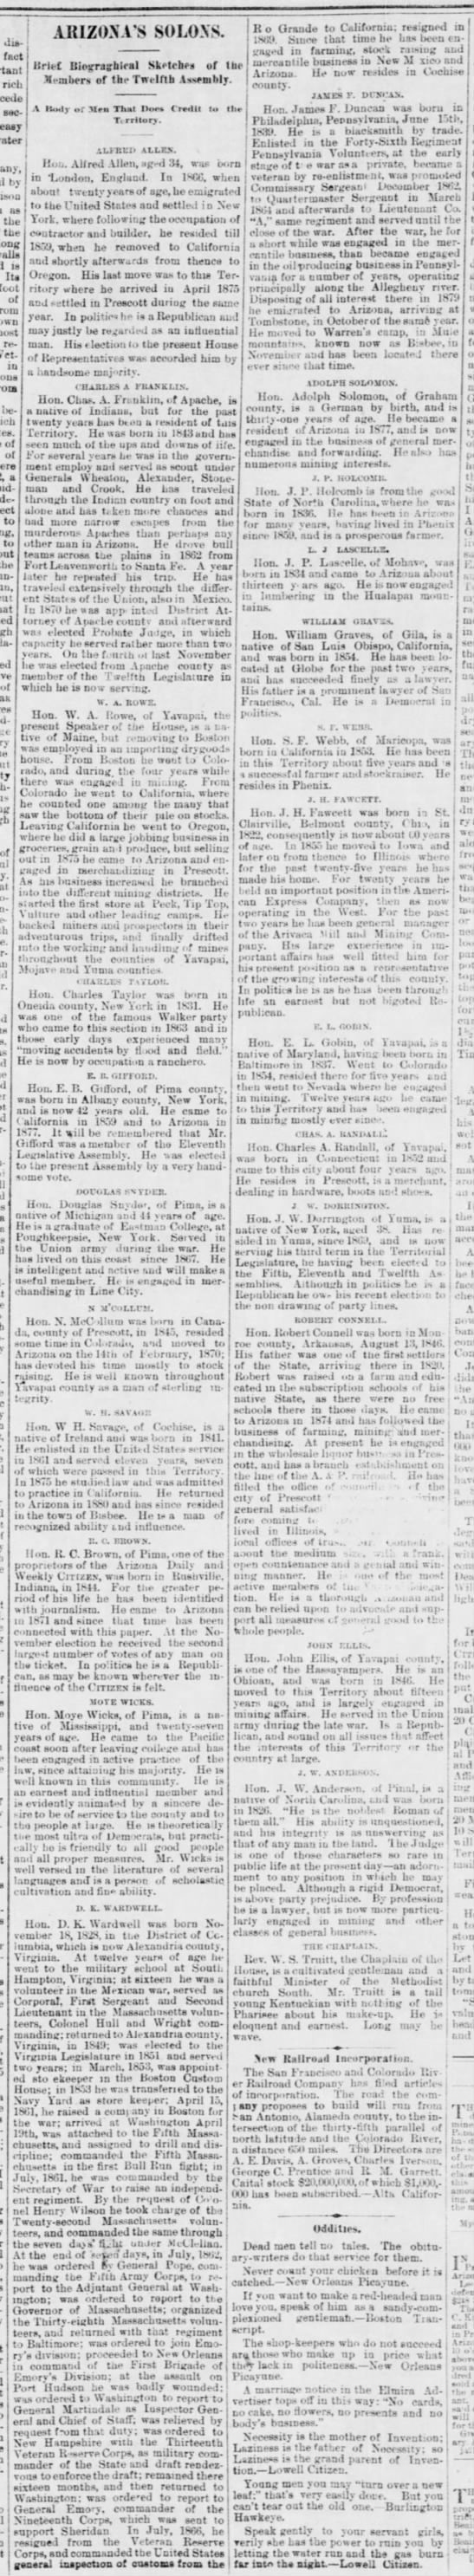 Biographical Sketches of Members of the Territorial Legislature in 1883 - 